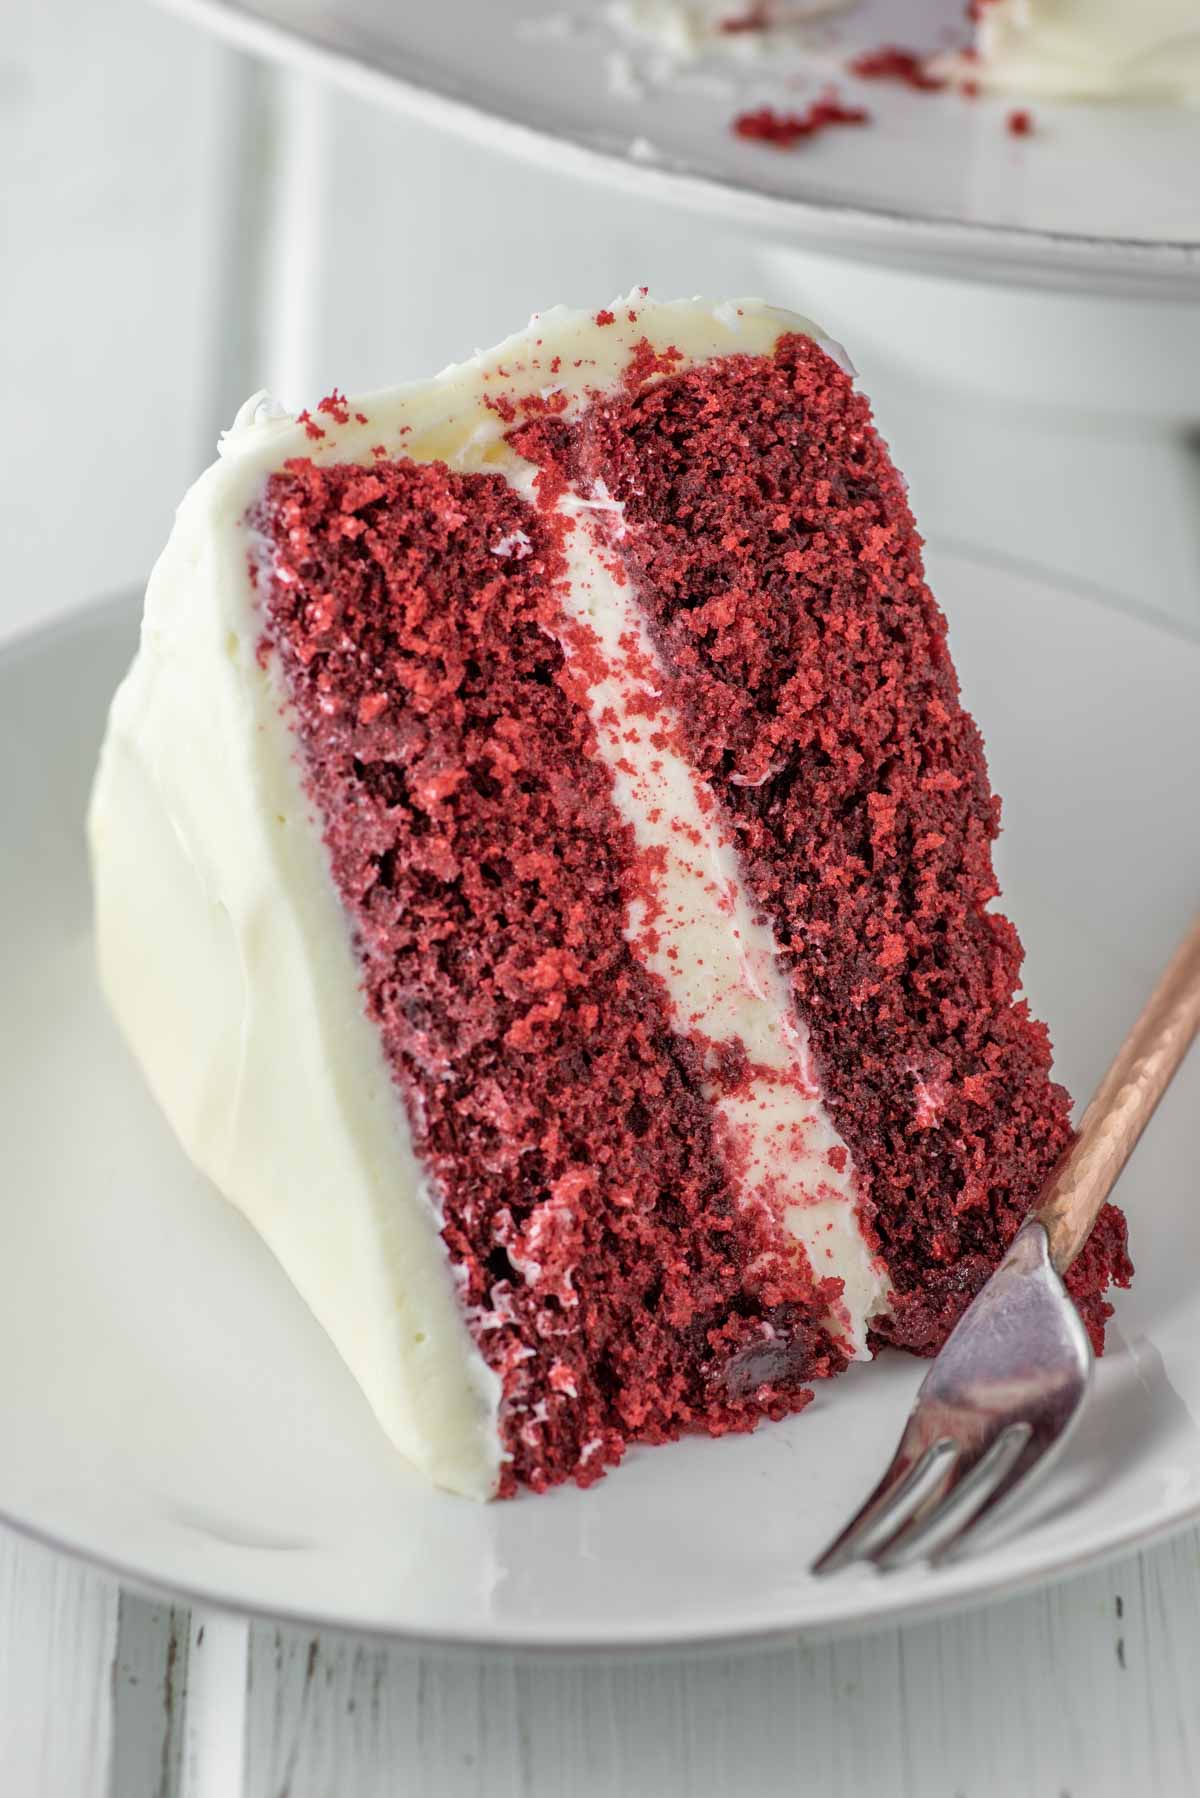 Best Southern Red Velvet Cake Recipe